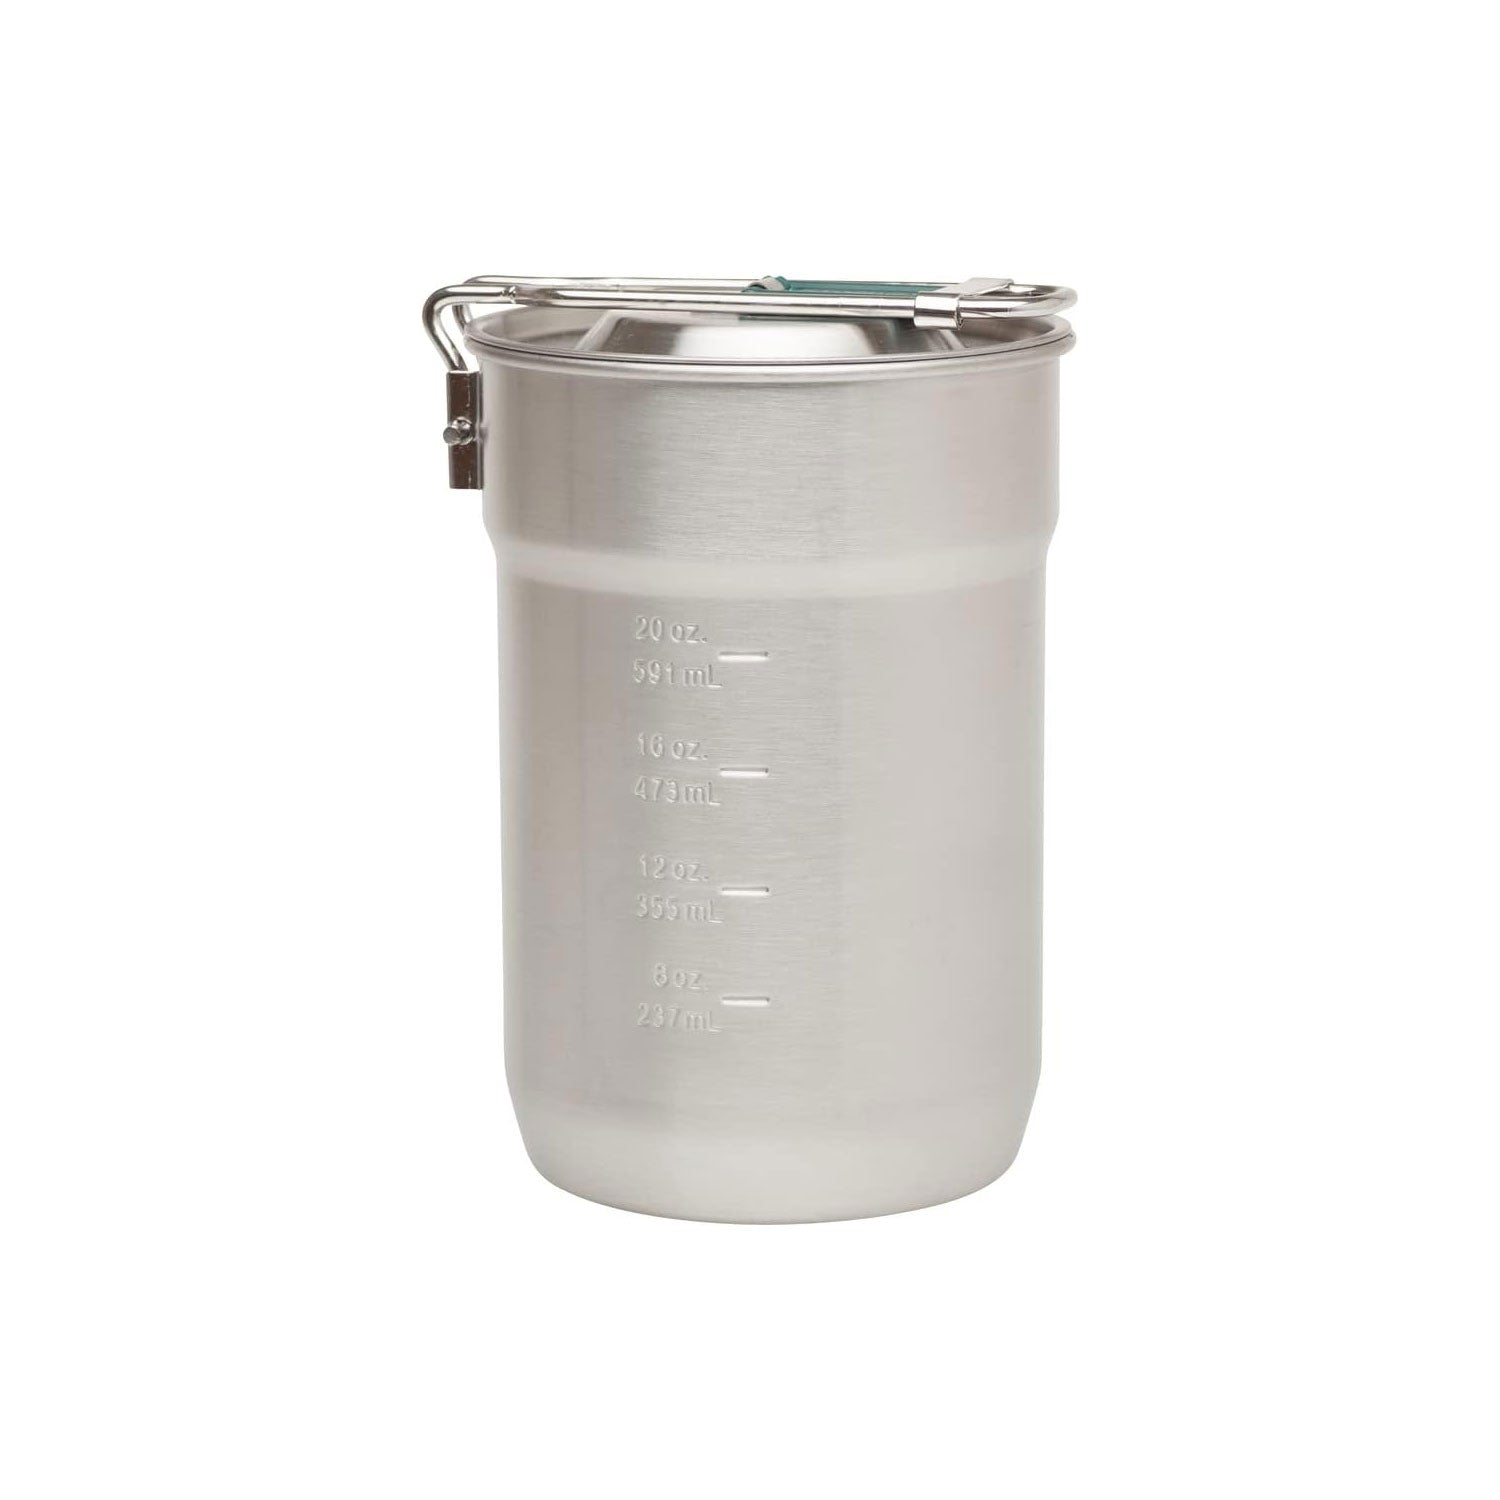 Stanley Adventure Vacuum Crock Food Jar, Stainless Steel, 3 Quart,  Stainless Steel 